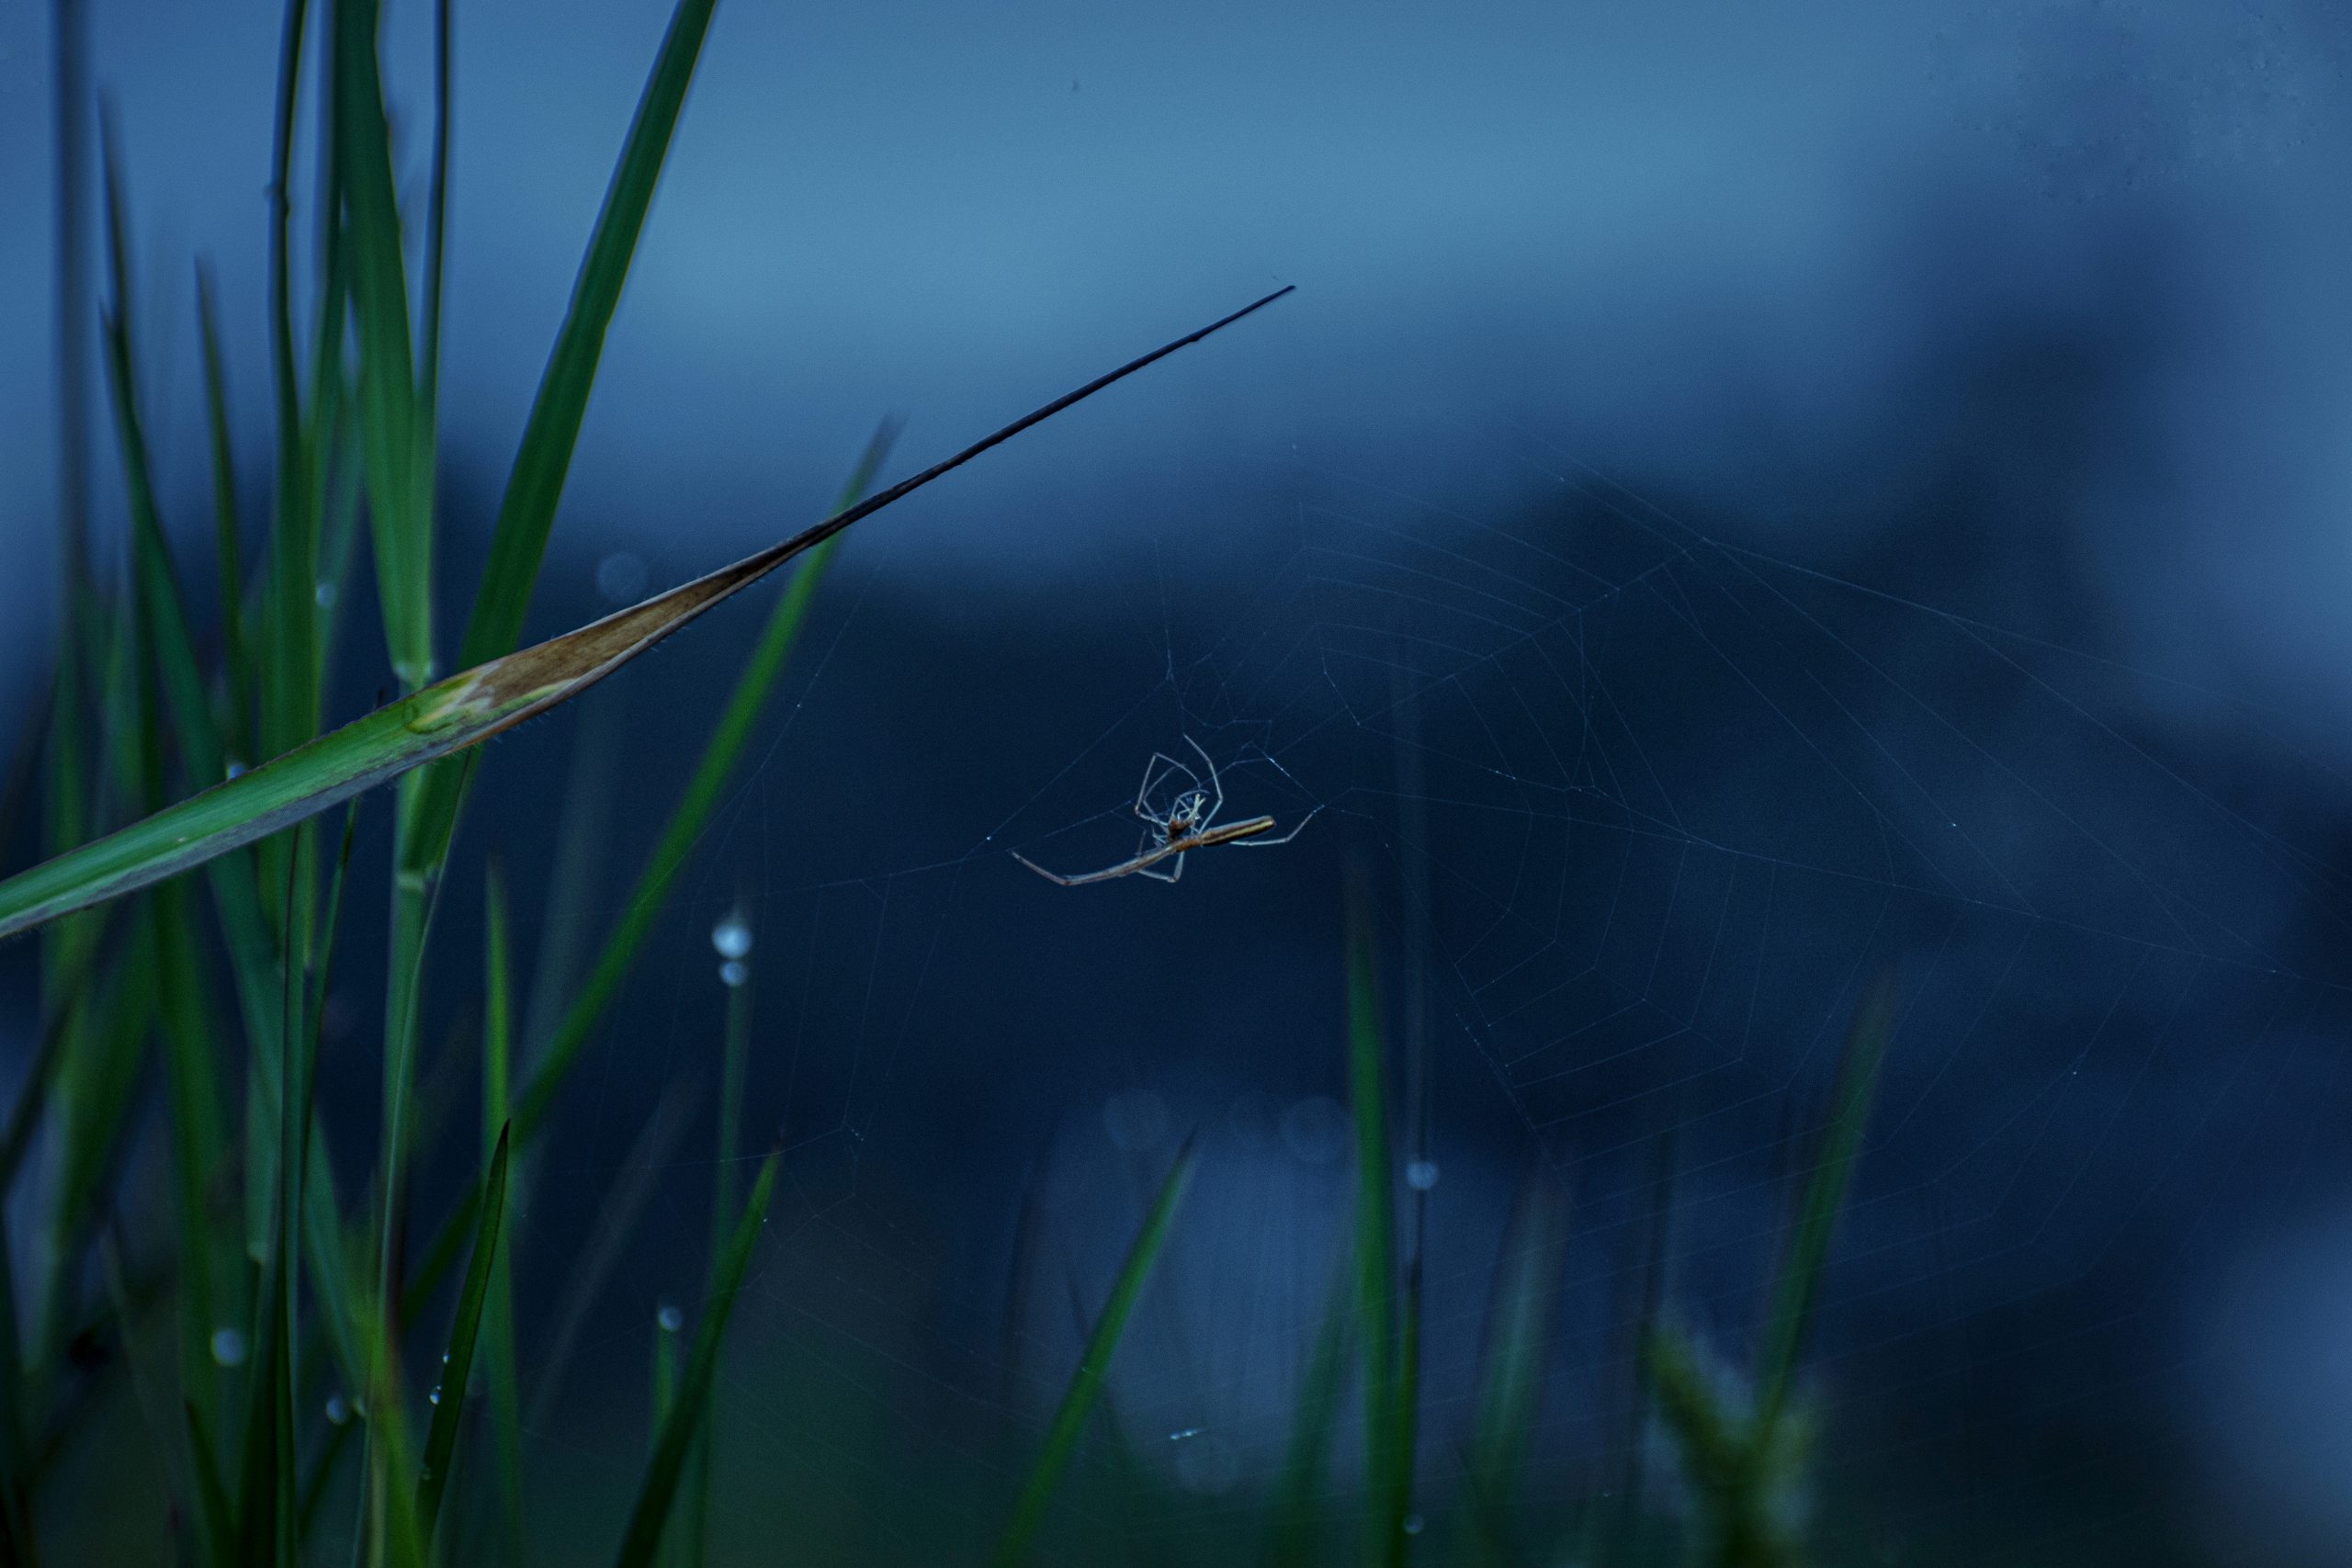 Grass & Spider